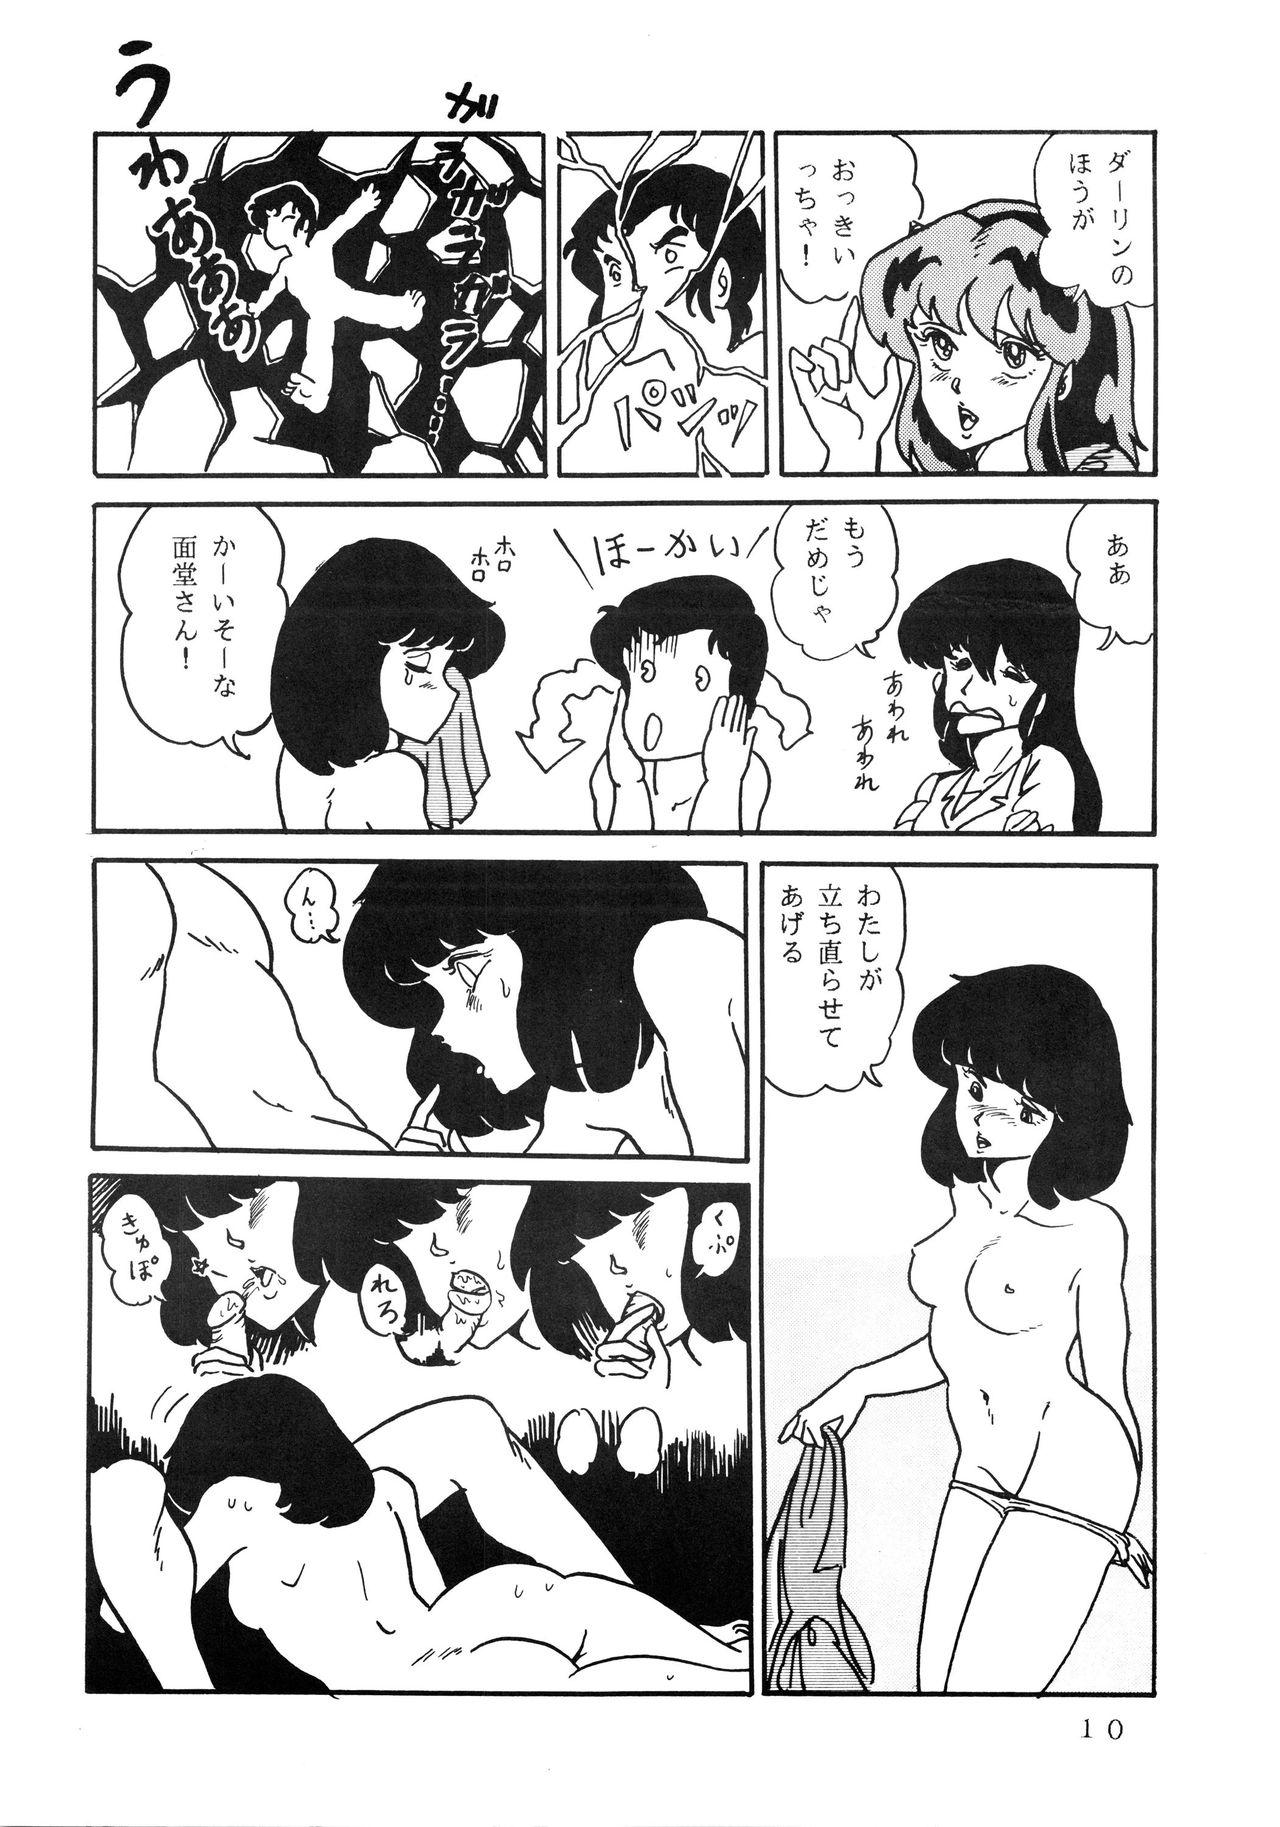 Jerking Off Shijou Saiaku no LUM 4 - Urusei yatsura Gordita - Page 10